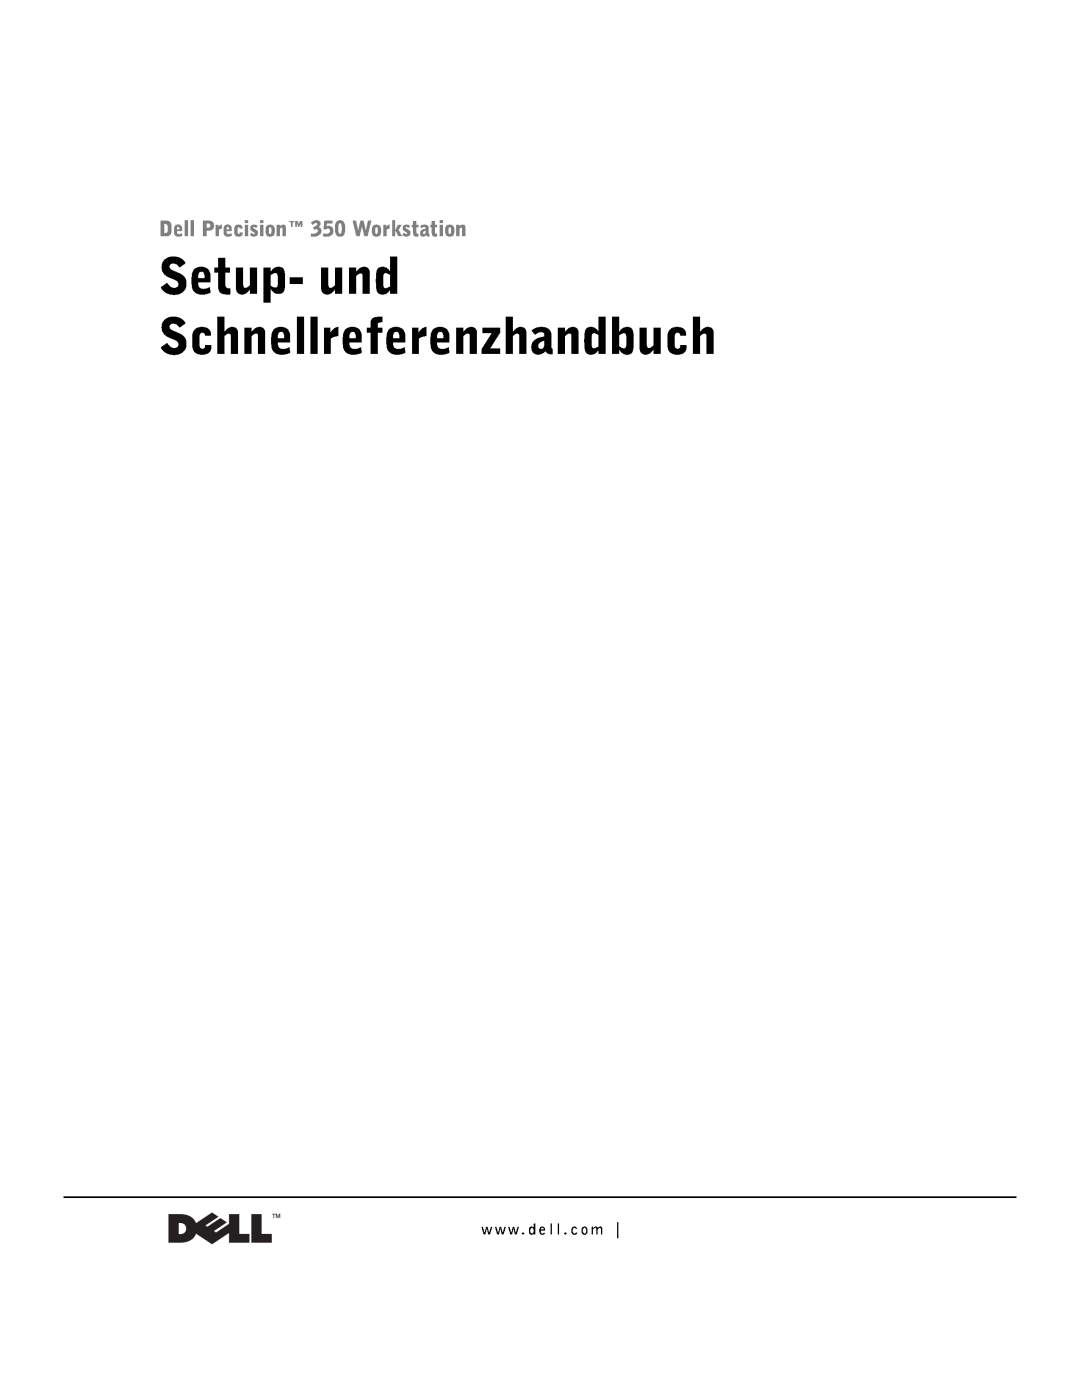 Dell 9T217 manual Setup- und Schnellreferenzhandbuch, Dell Precision 350 Workstation, w w w . d e l l . c o m 